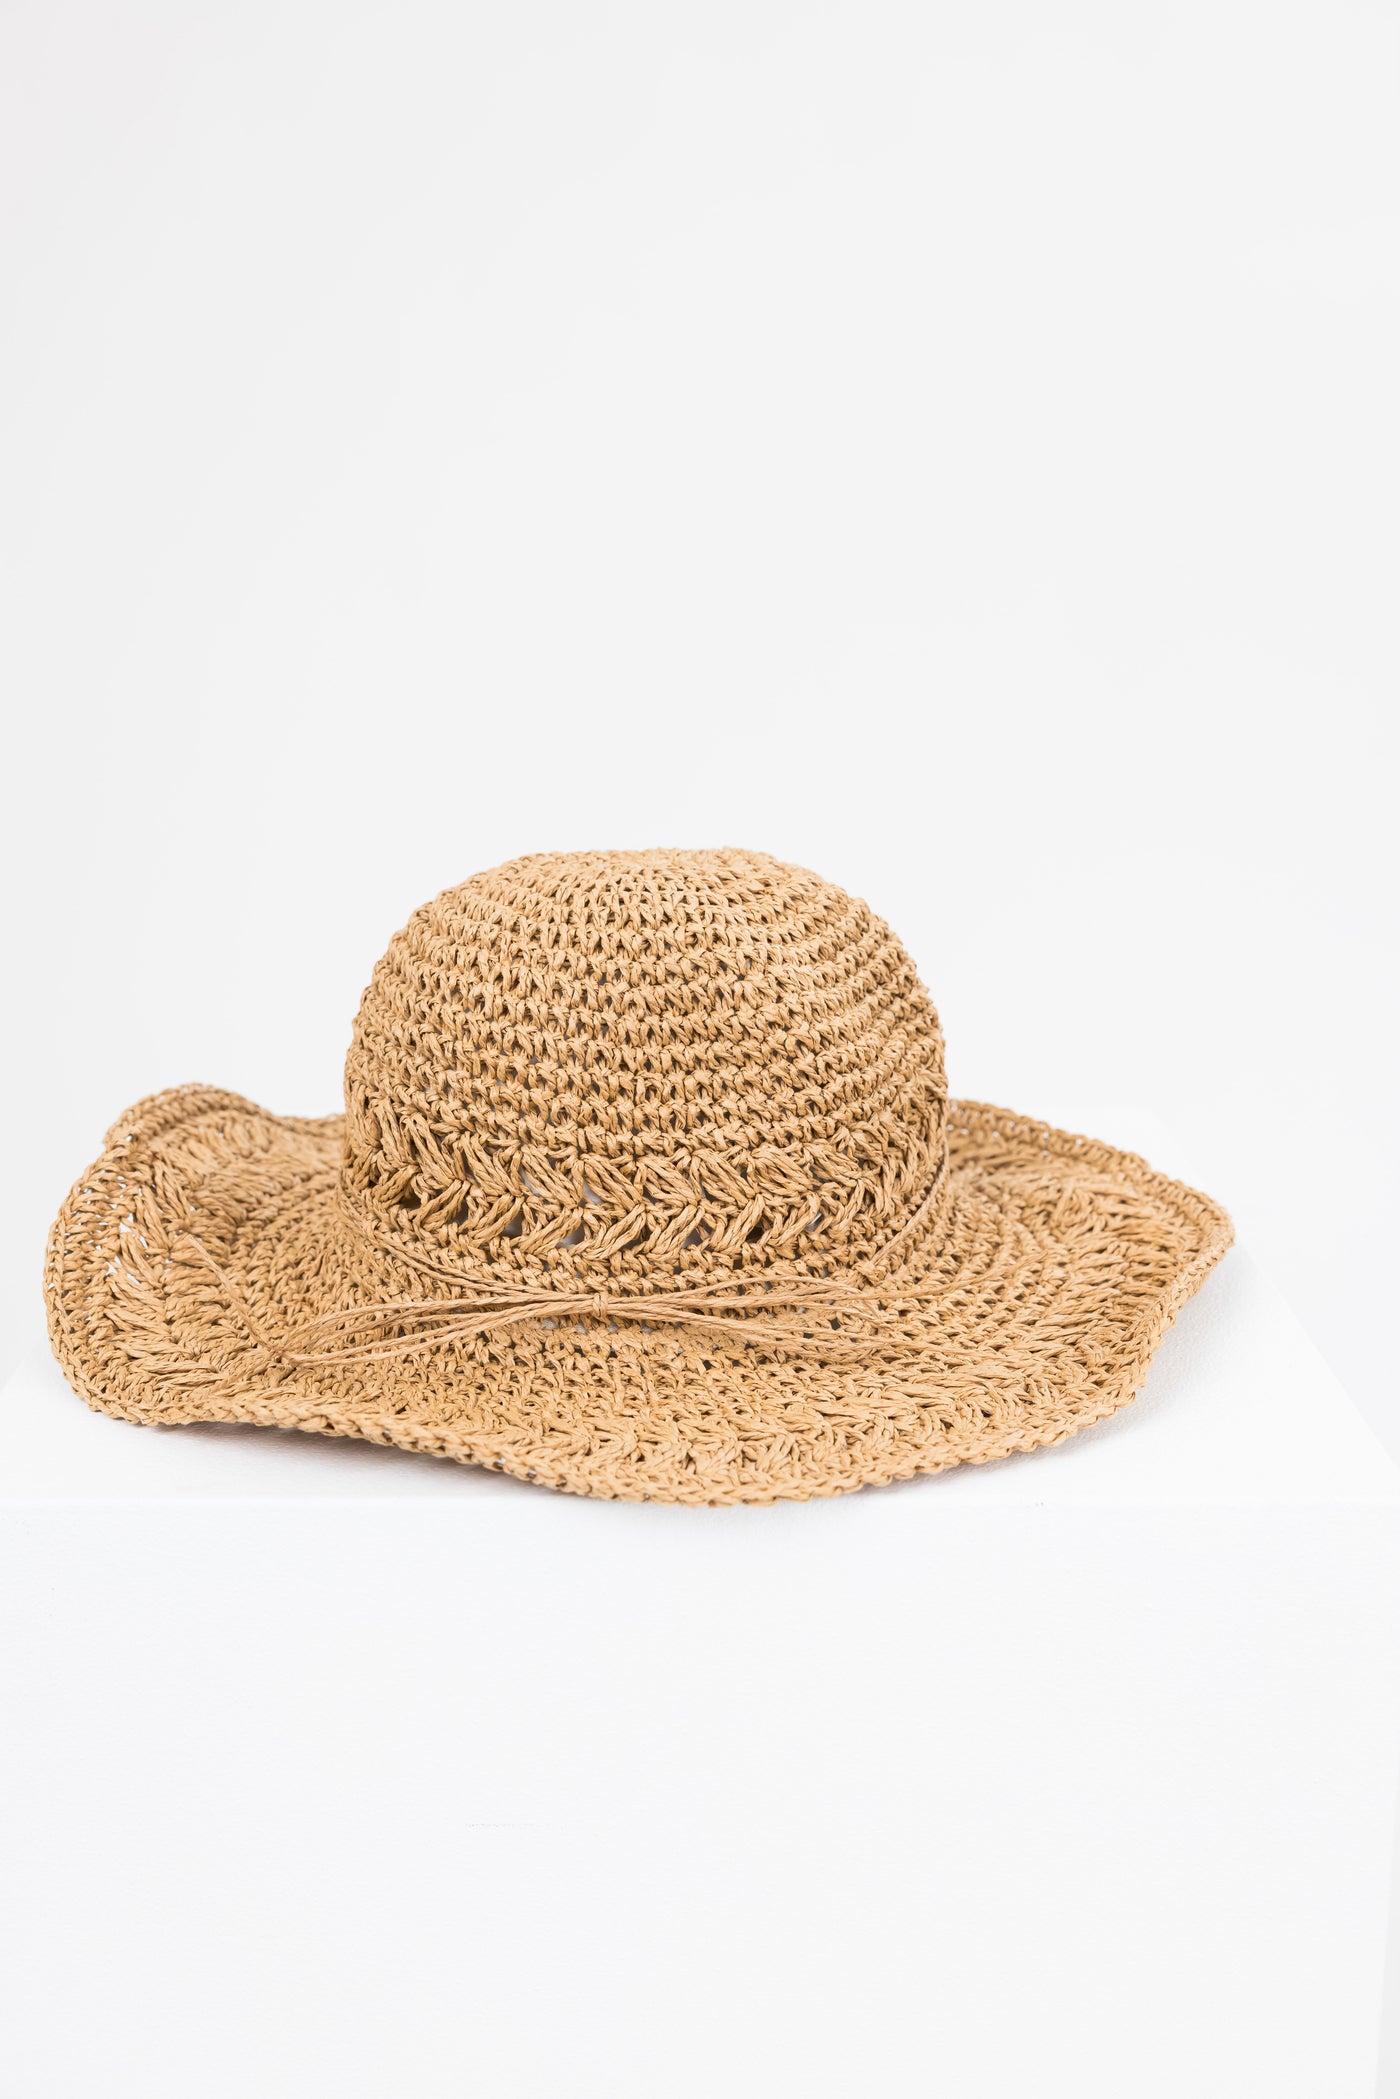 Brown Sugar Twine Tie Floppy Straw Sun Hat